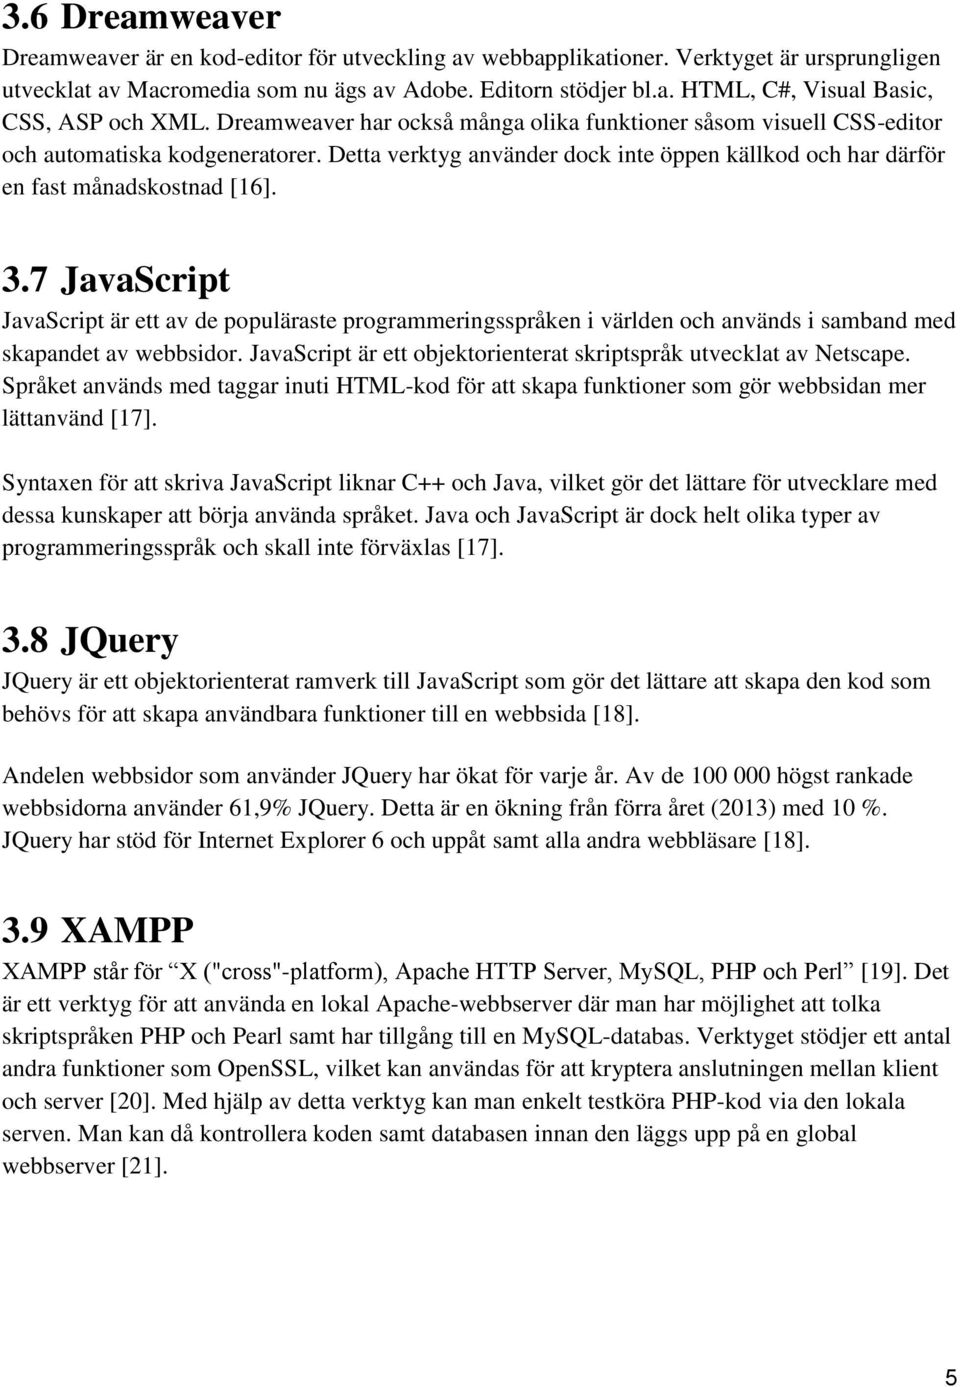 7 JavaScript JavaScript är ett av de populäraste programmeringsspråken i världen och används i samband med skapandet av webbsidor. JavaScript är ett objektorienterat skriptspråk utvecklat av Netscape.